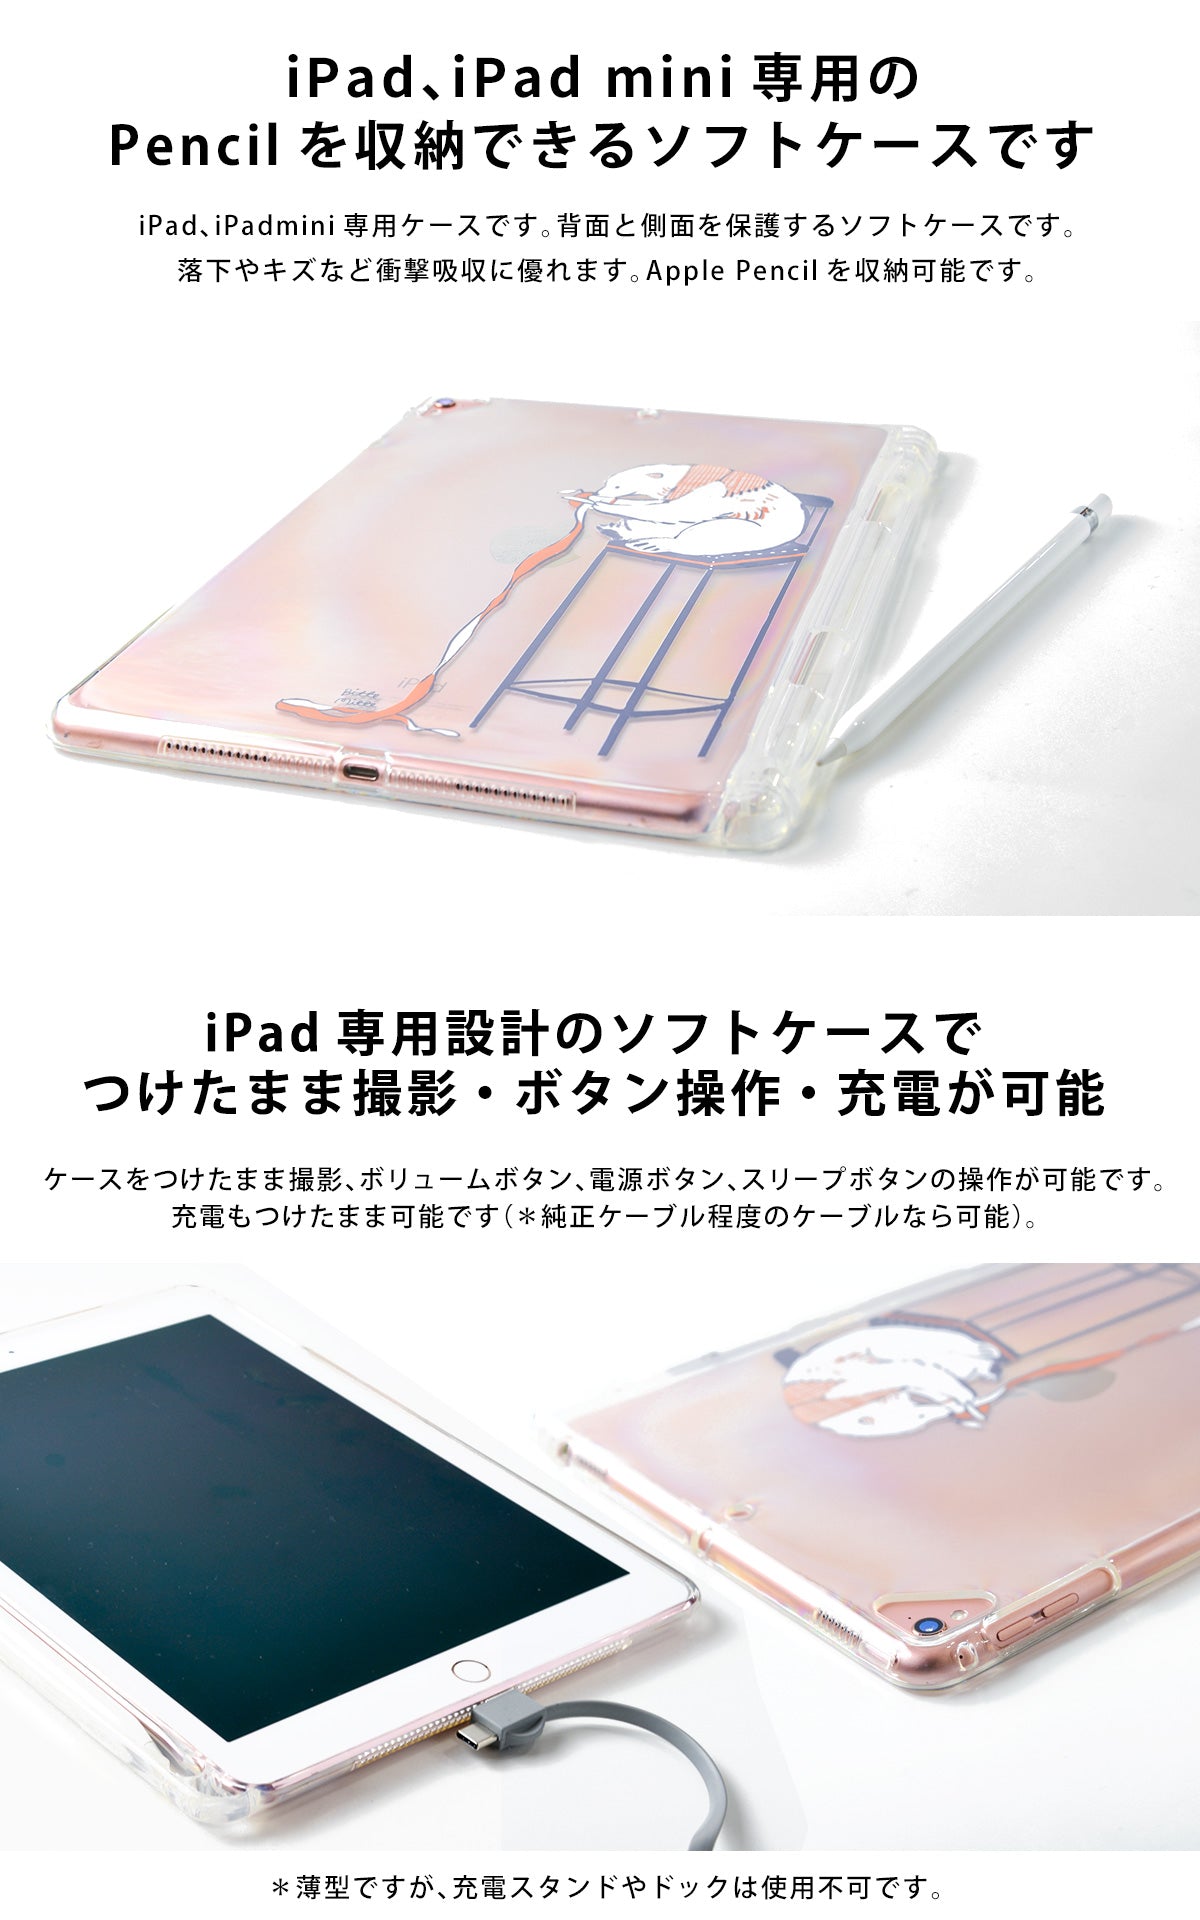 iPad クリアケース ペン収納 カバー おしゃれ かわいい シロクマ